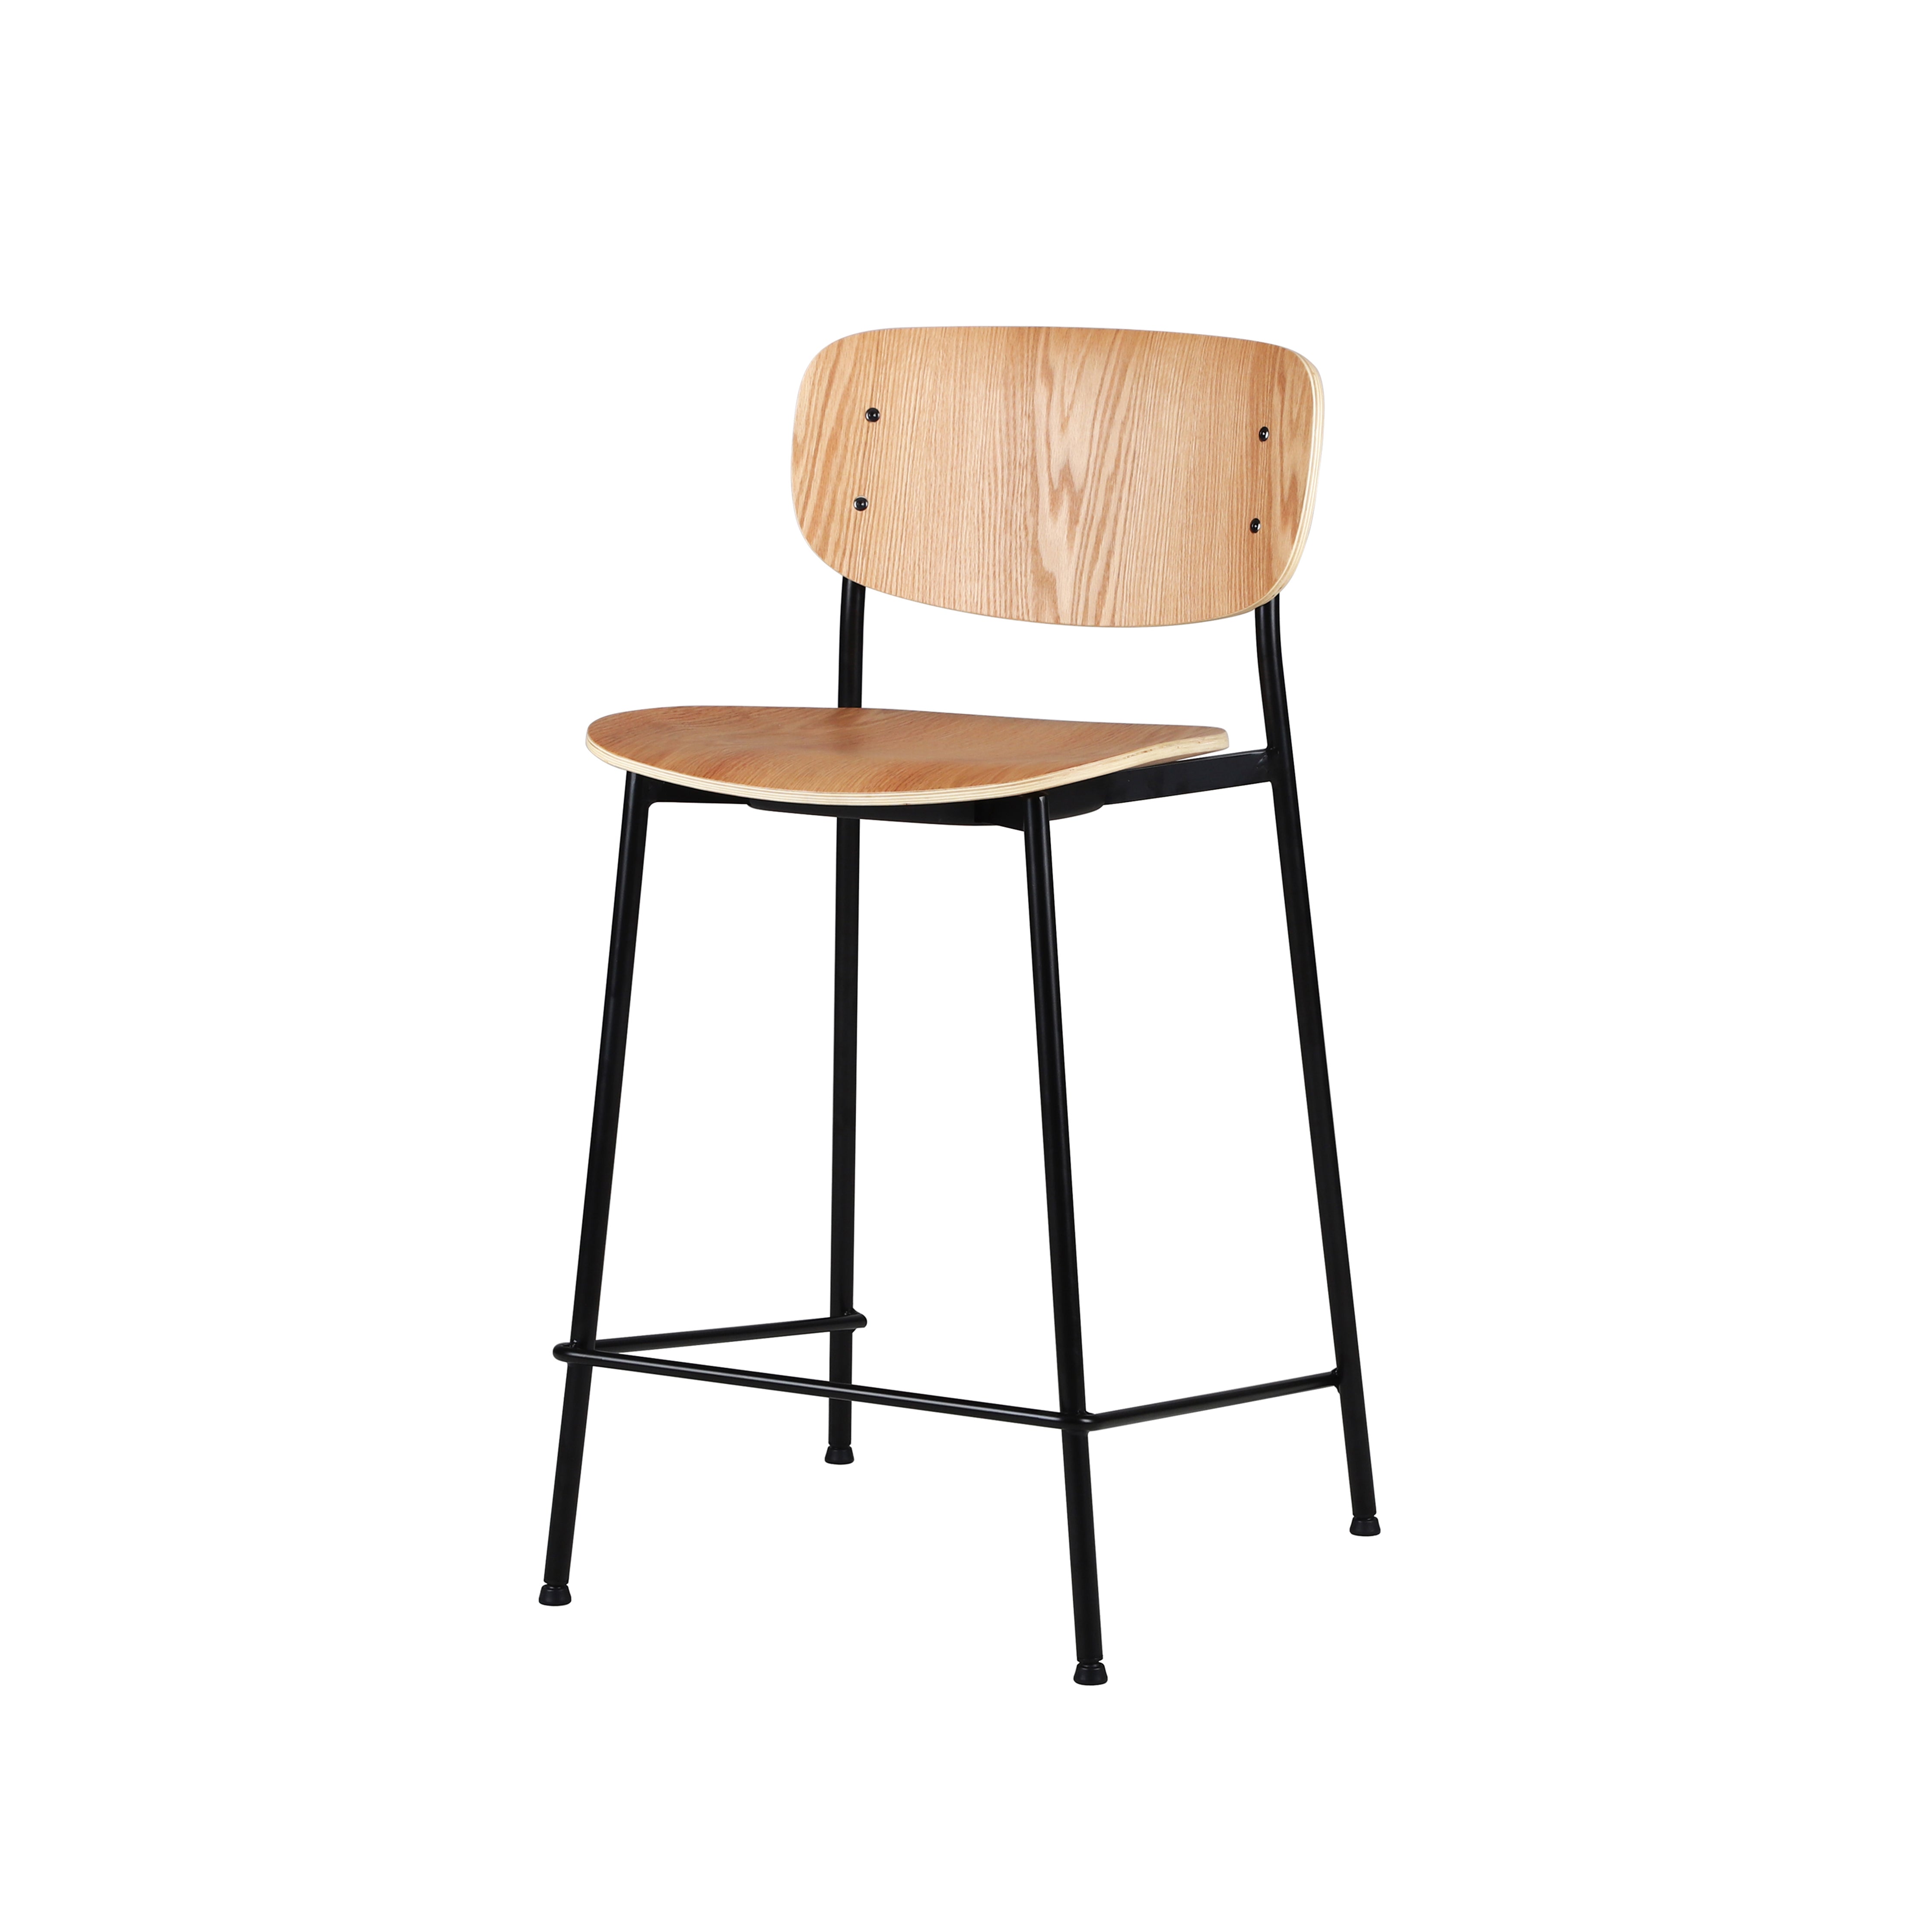 WM - Bar Chair (Wooden)